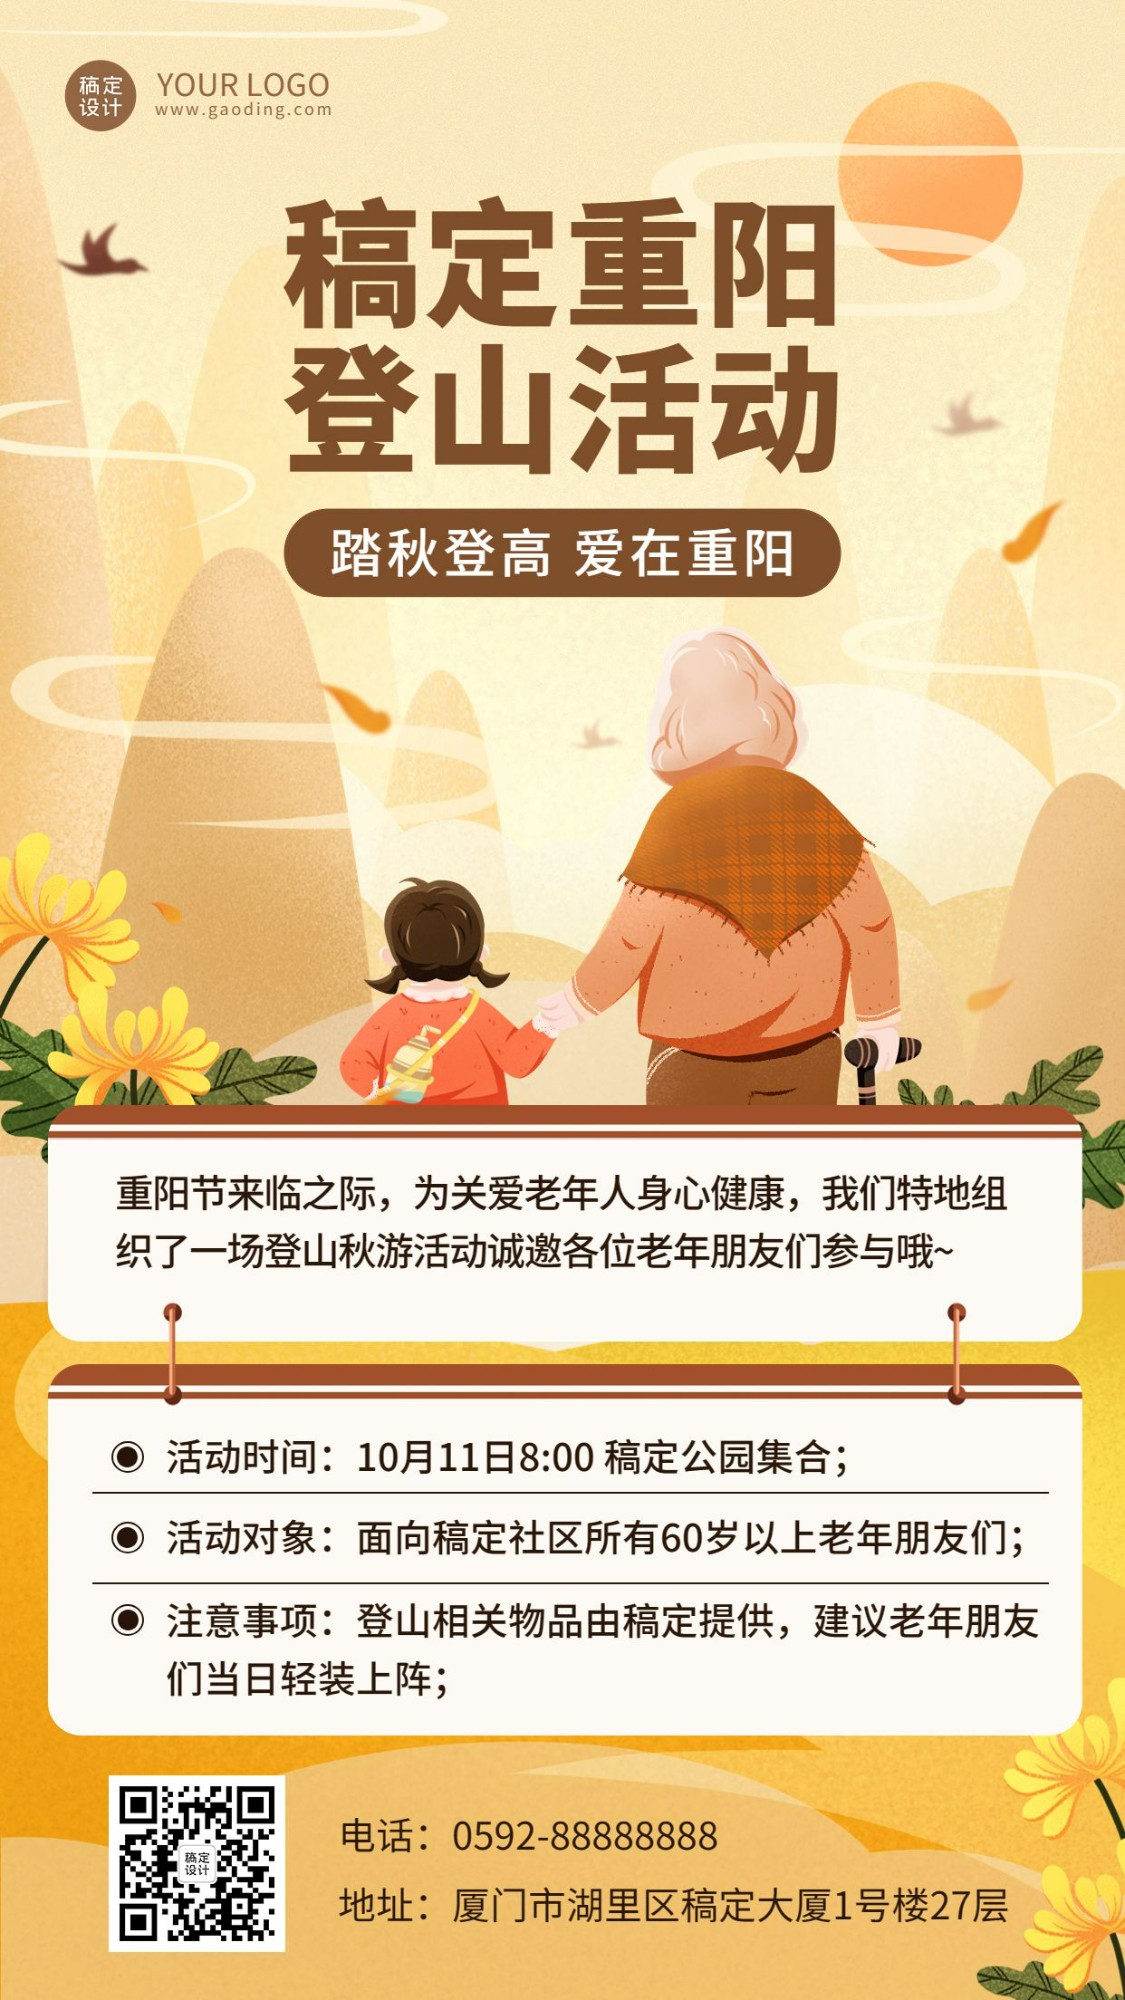 新媒体重阳节节日活动插画海报